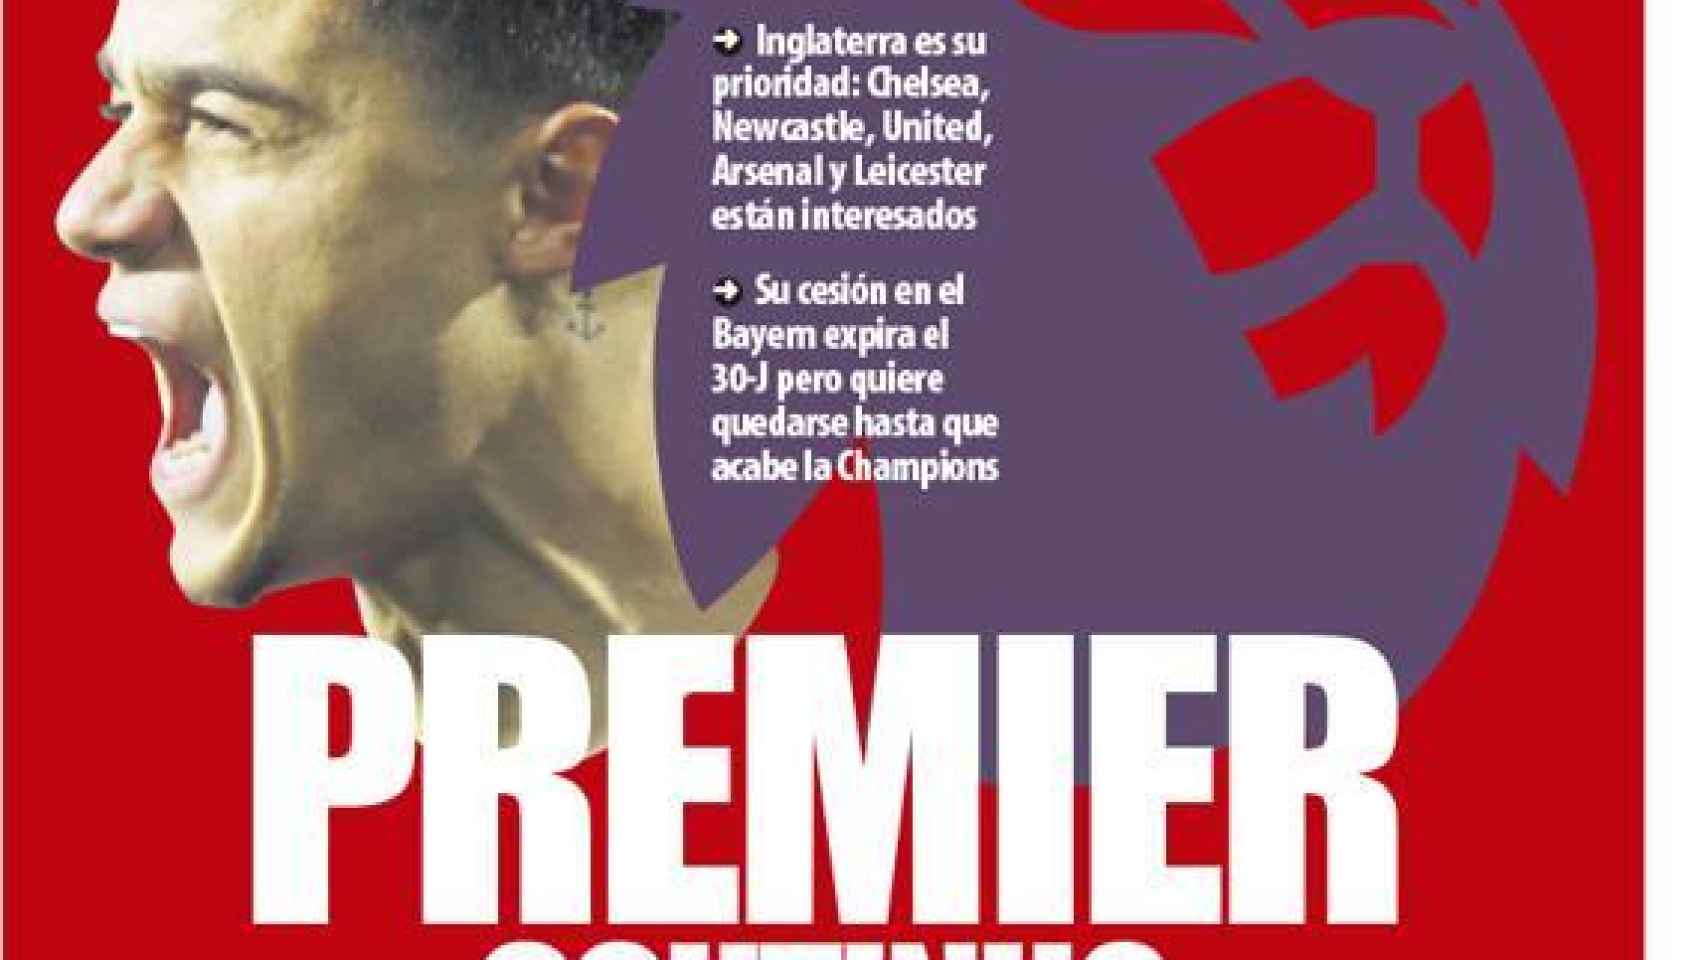 La portada del diario Mundo Deportivo (28/05/2020)